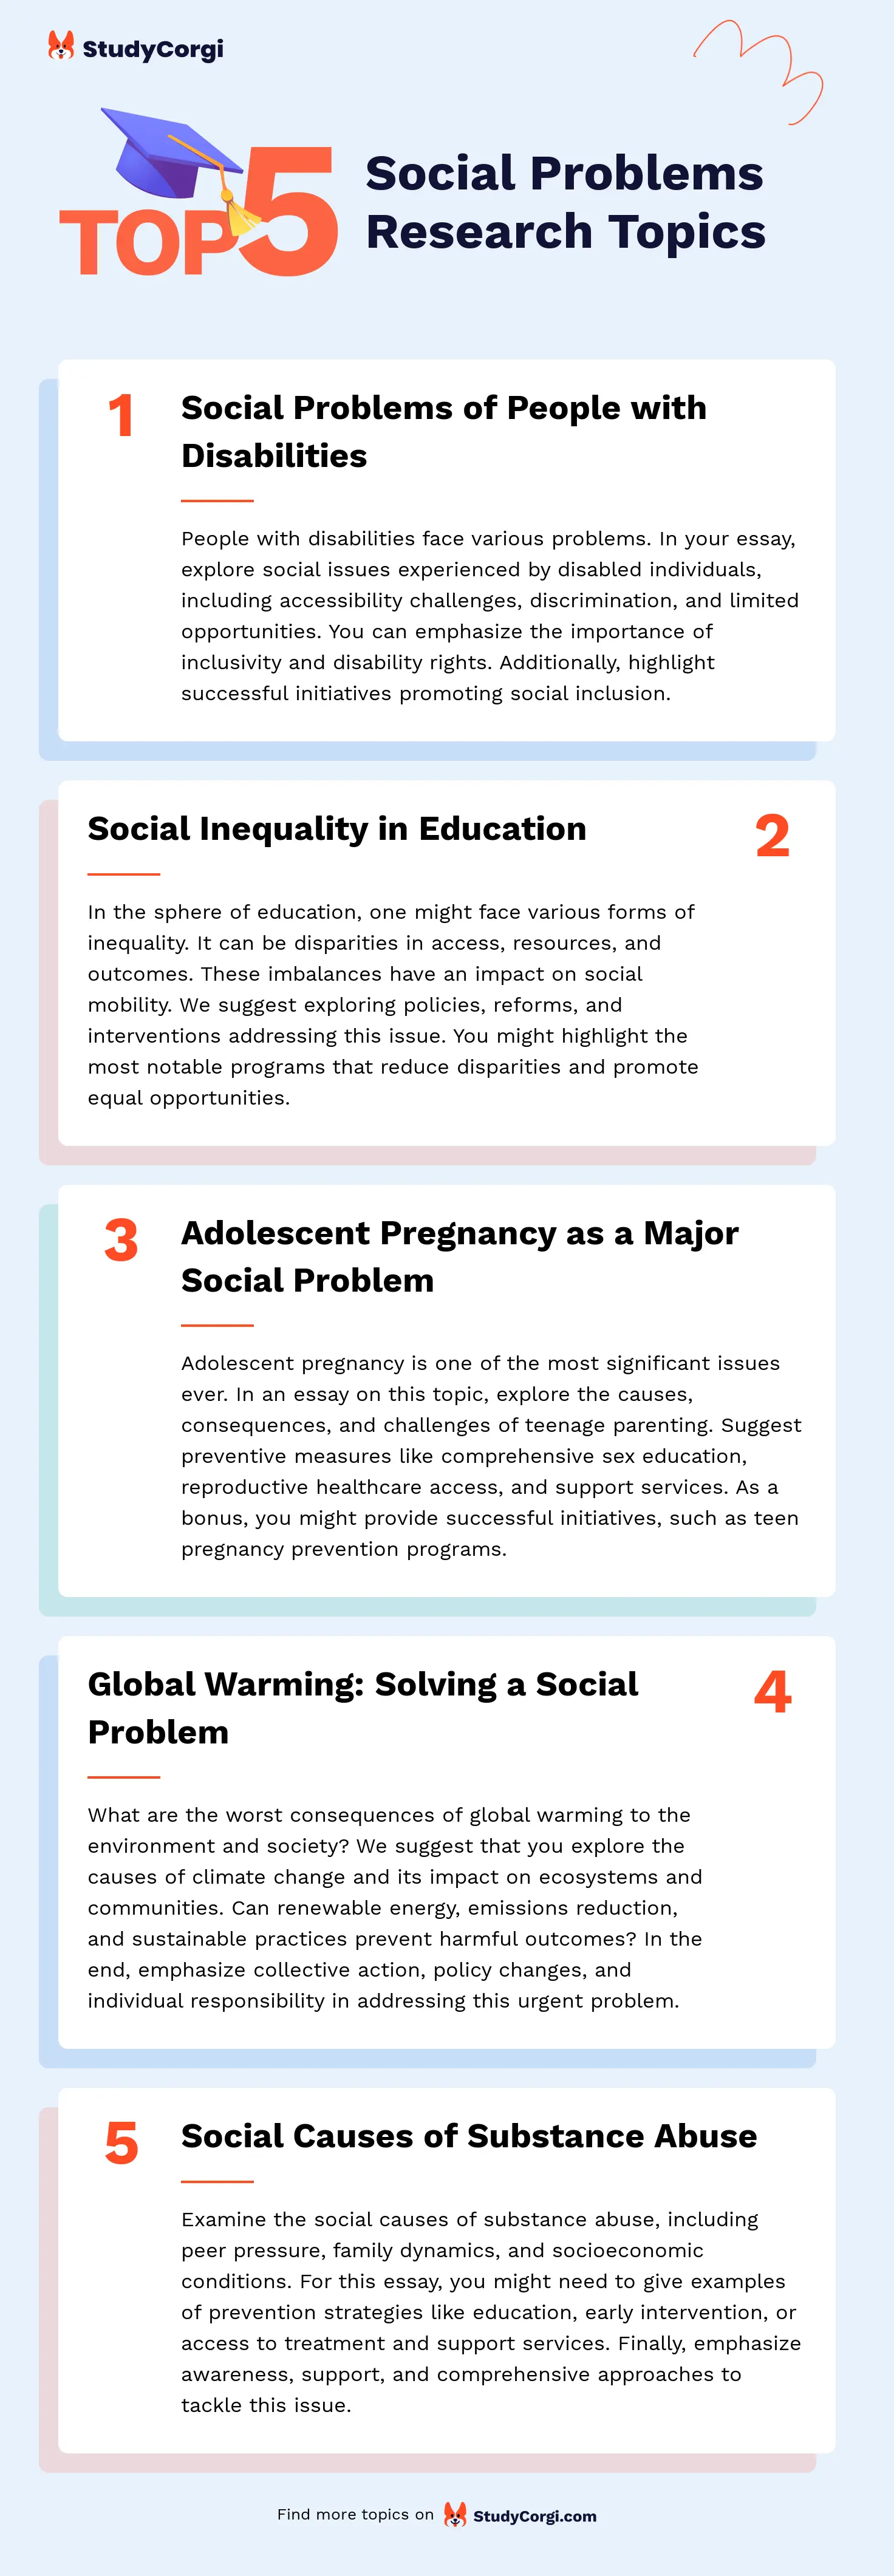 TOP-5 Social Problems Research Topics